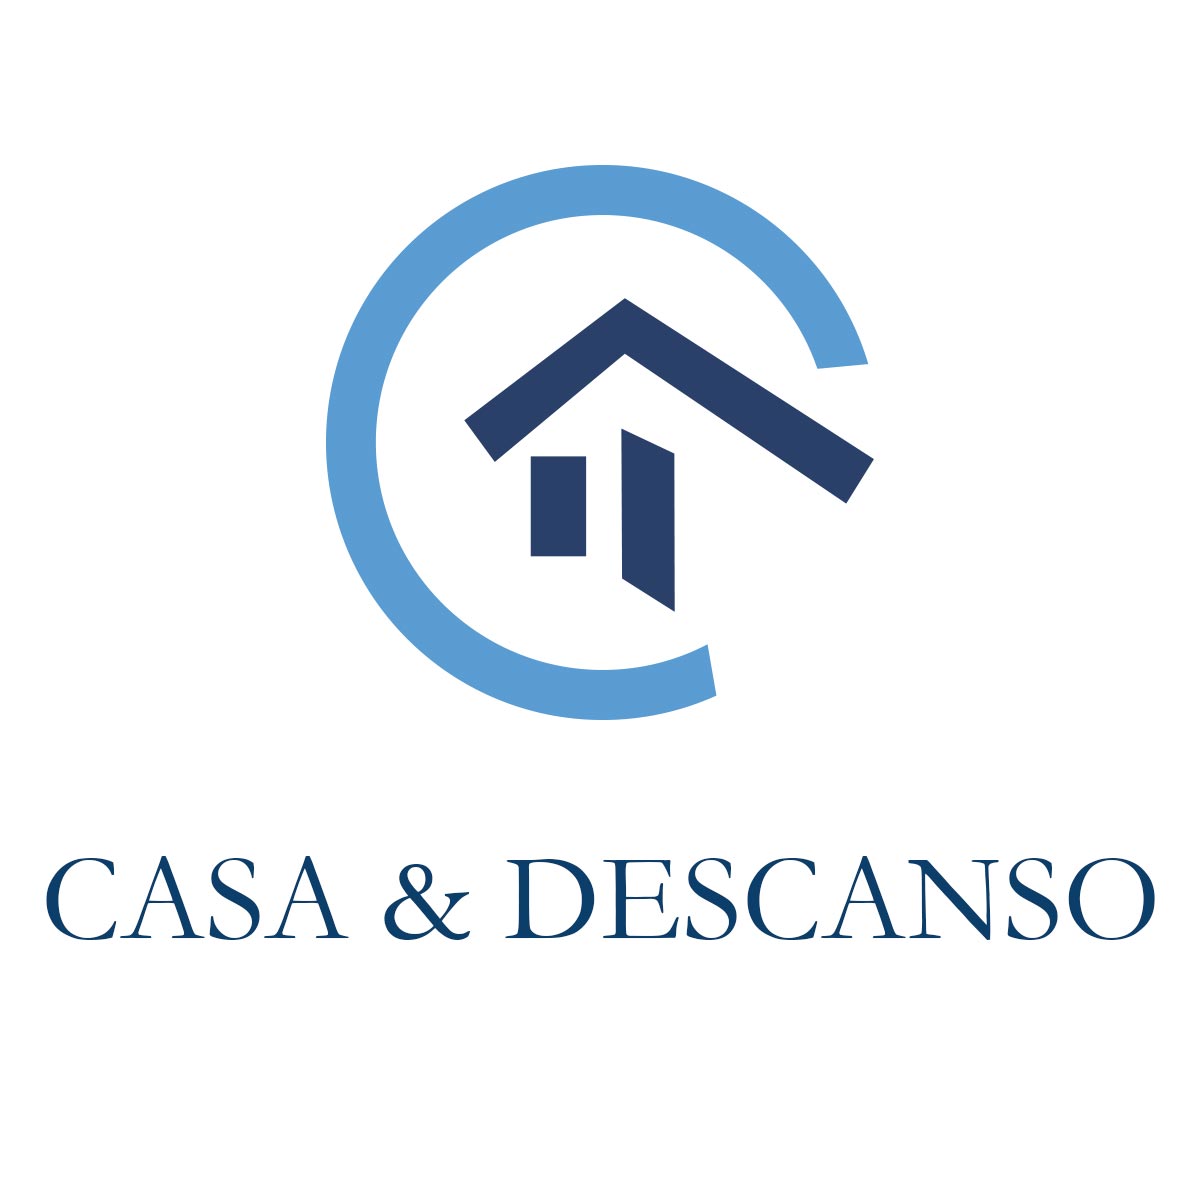 (c) Casaydescanso.com.ar